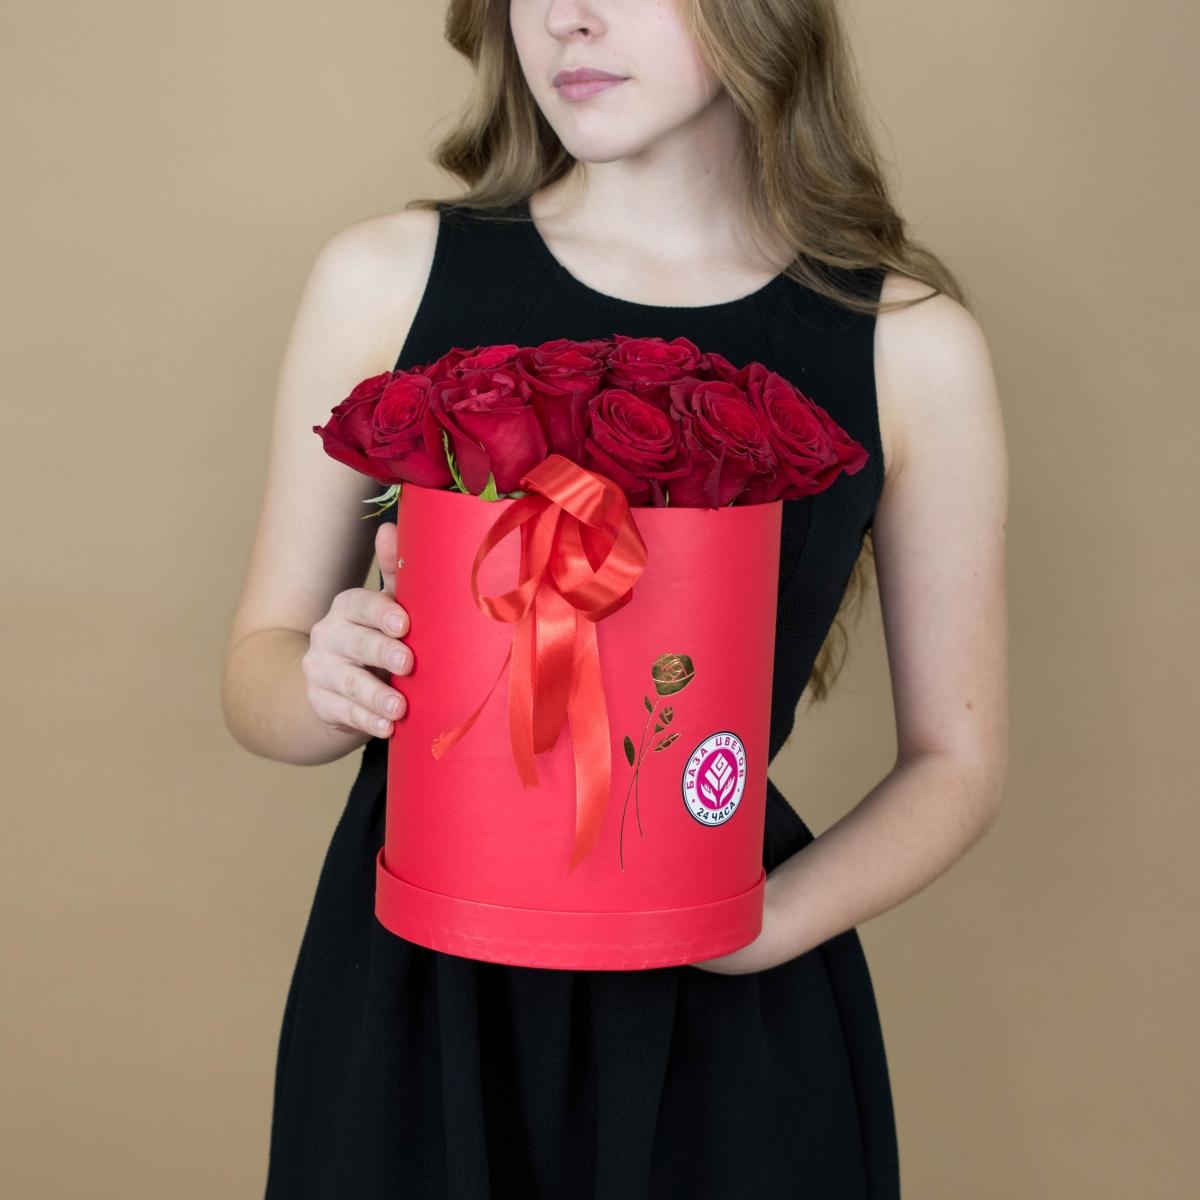 Розы красные в шляпной коробке (Артикул - 1950)